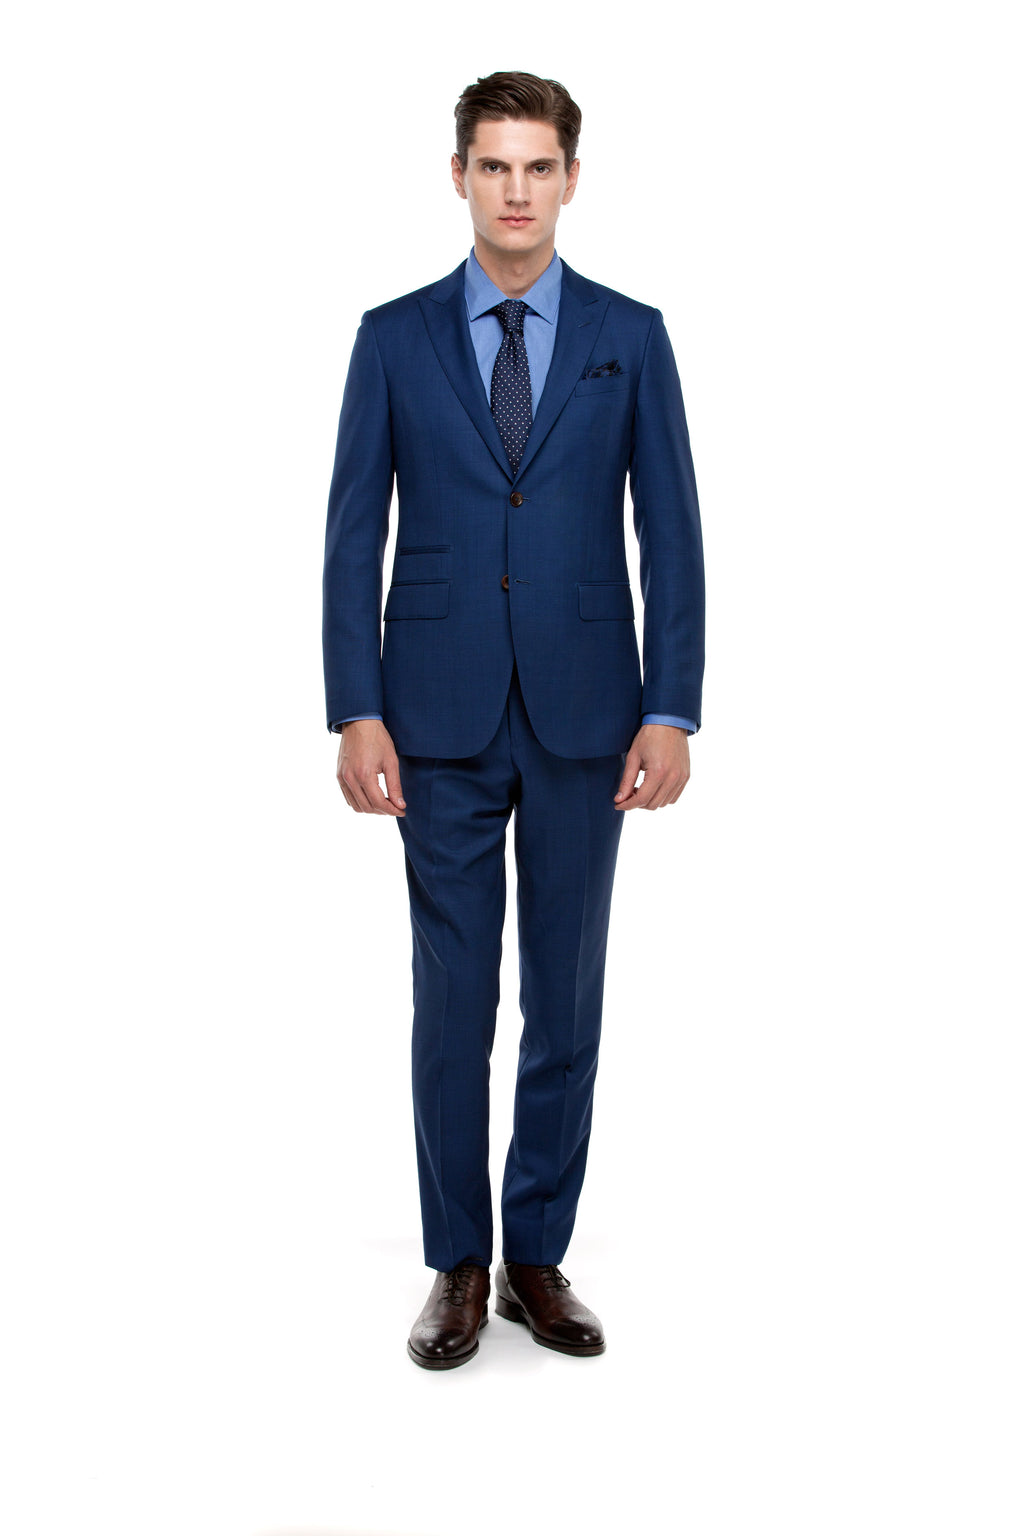 Custom Blue Signature Suit ottotos